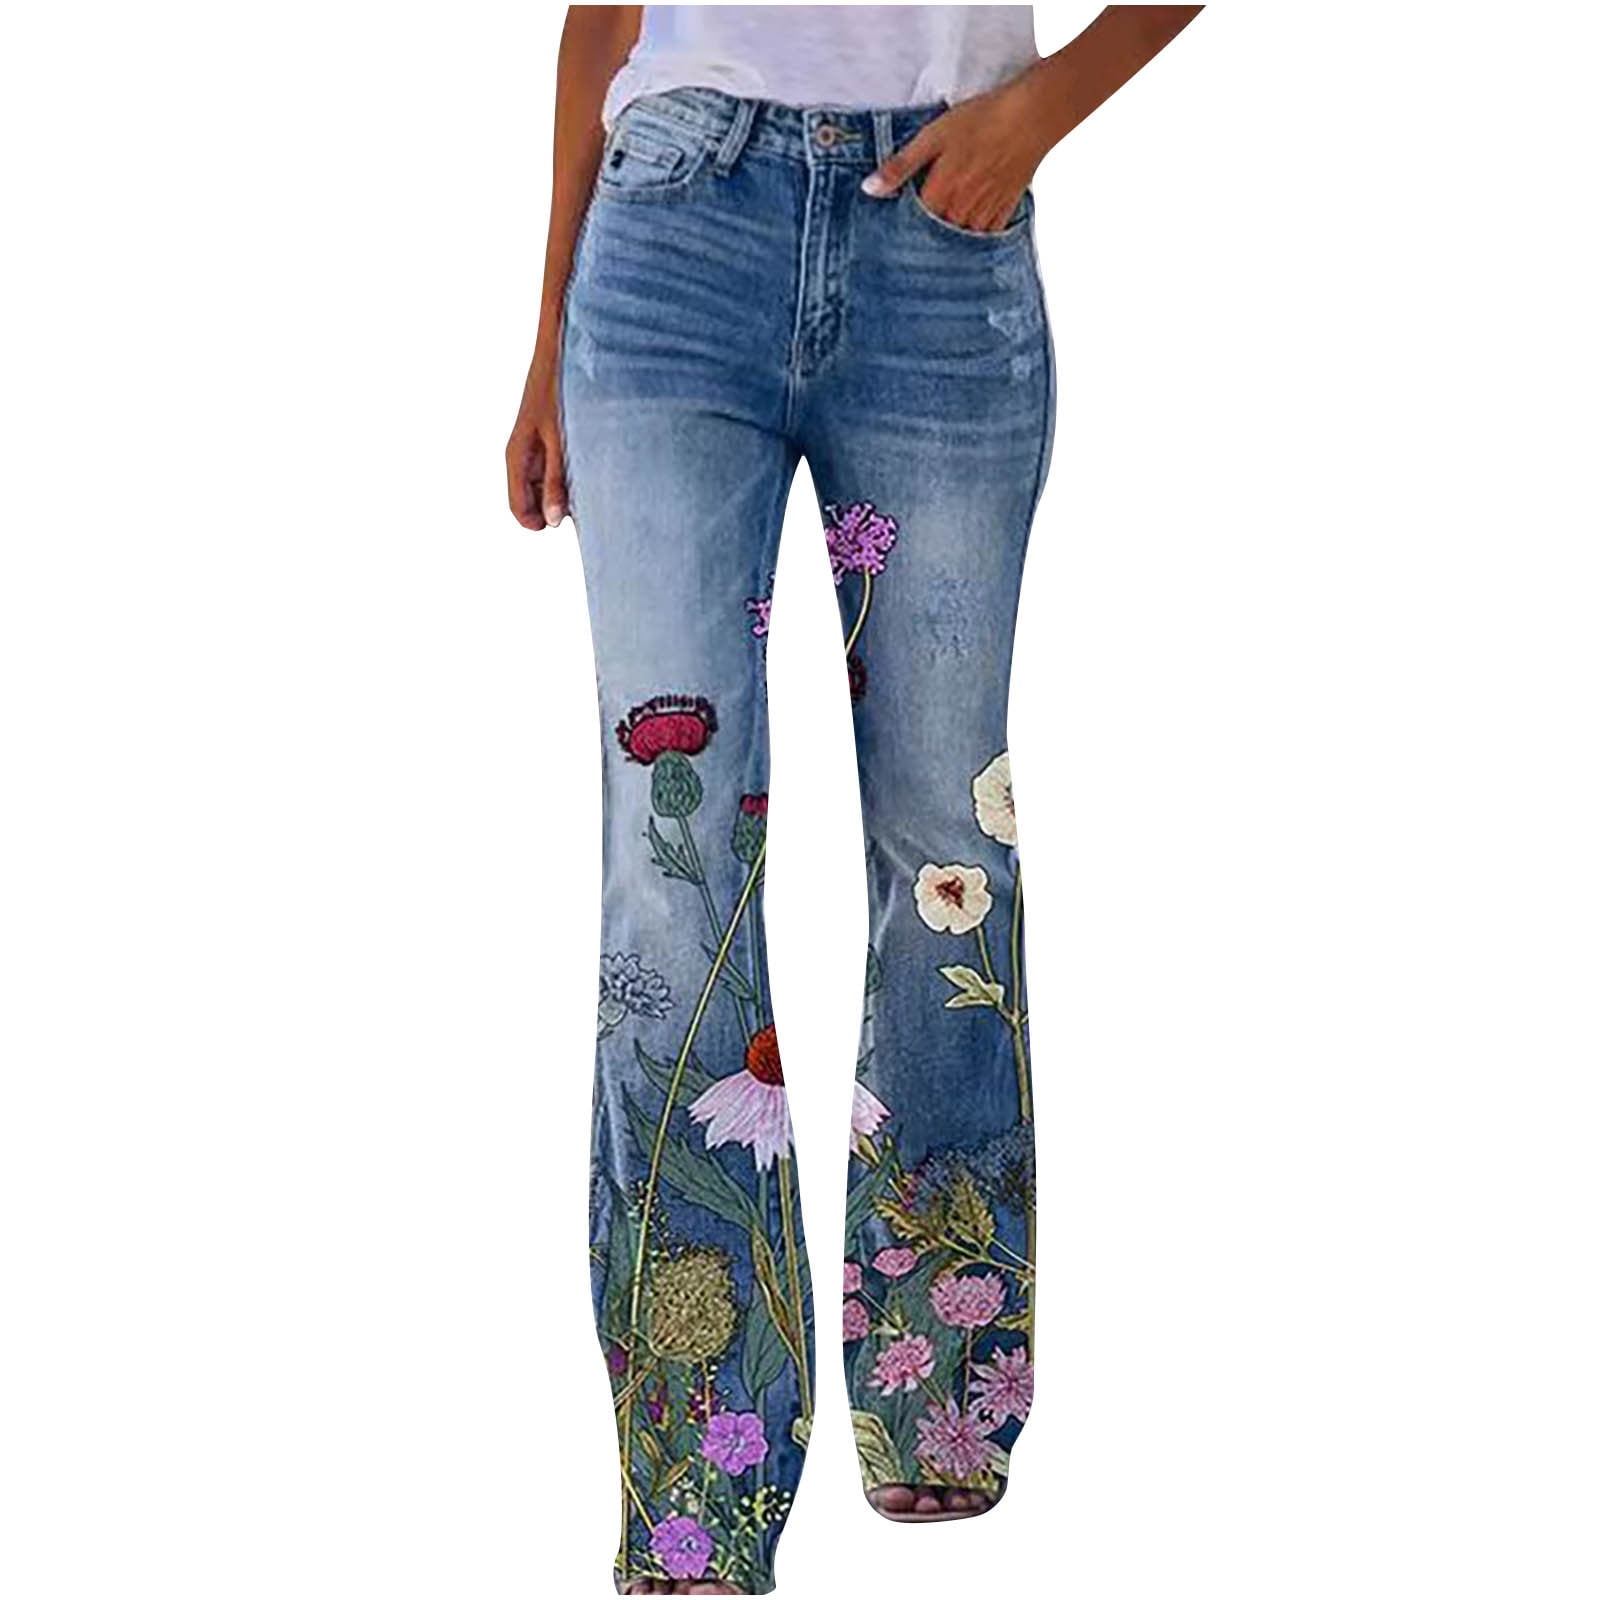 Trendylook Flared Women Grey Jeans - Buy Trendylook Flared Women Grey Jeans  Online at Best Prices in India